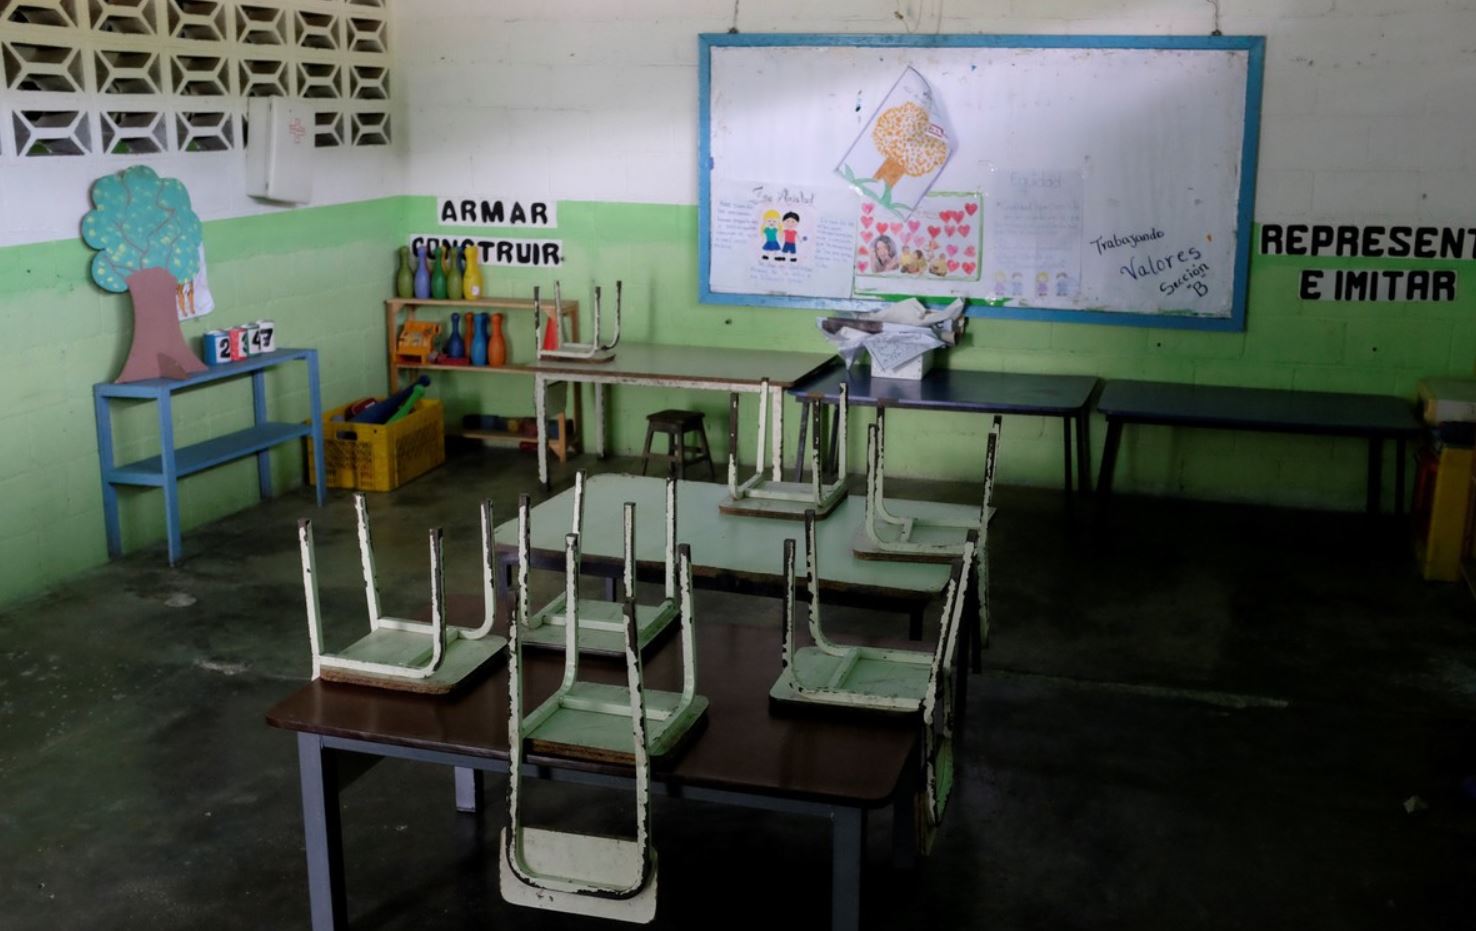 Matrículas escolares son exorbitantes en comparación con ingresos de los venezolanos (Video)